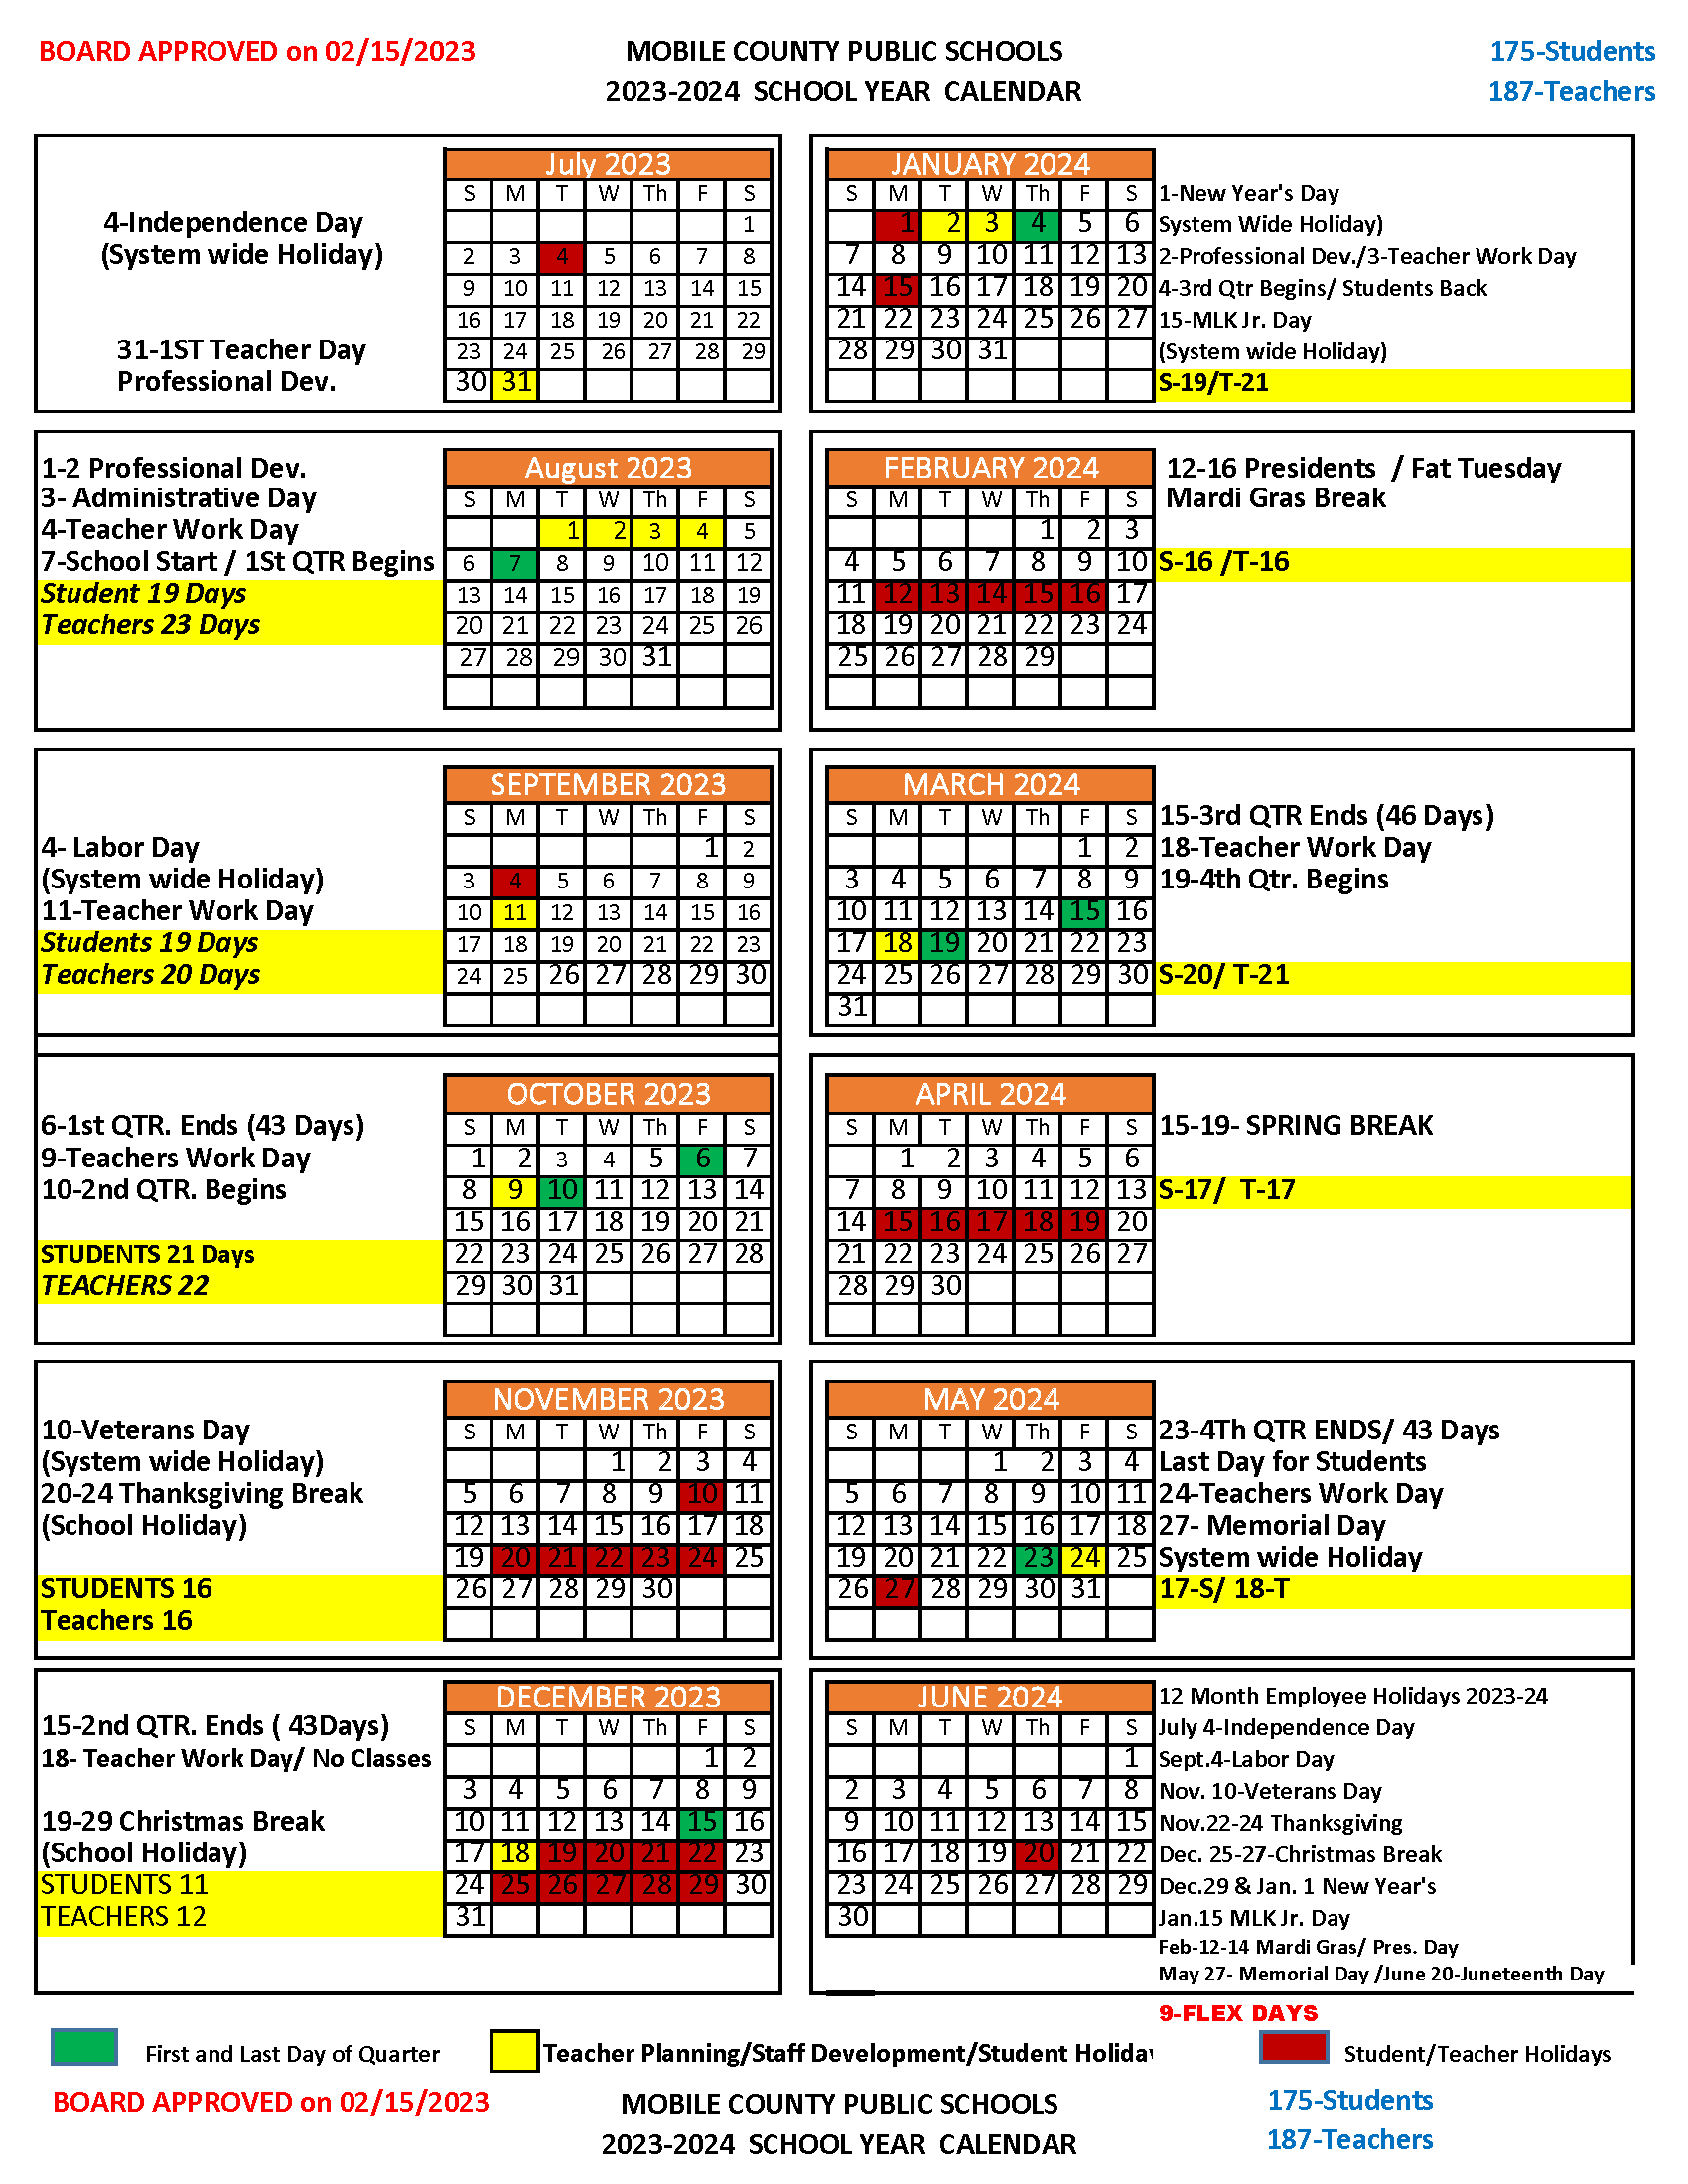 MCPSS 23-24 Calendar